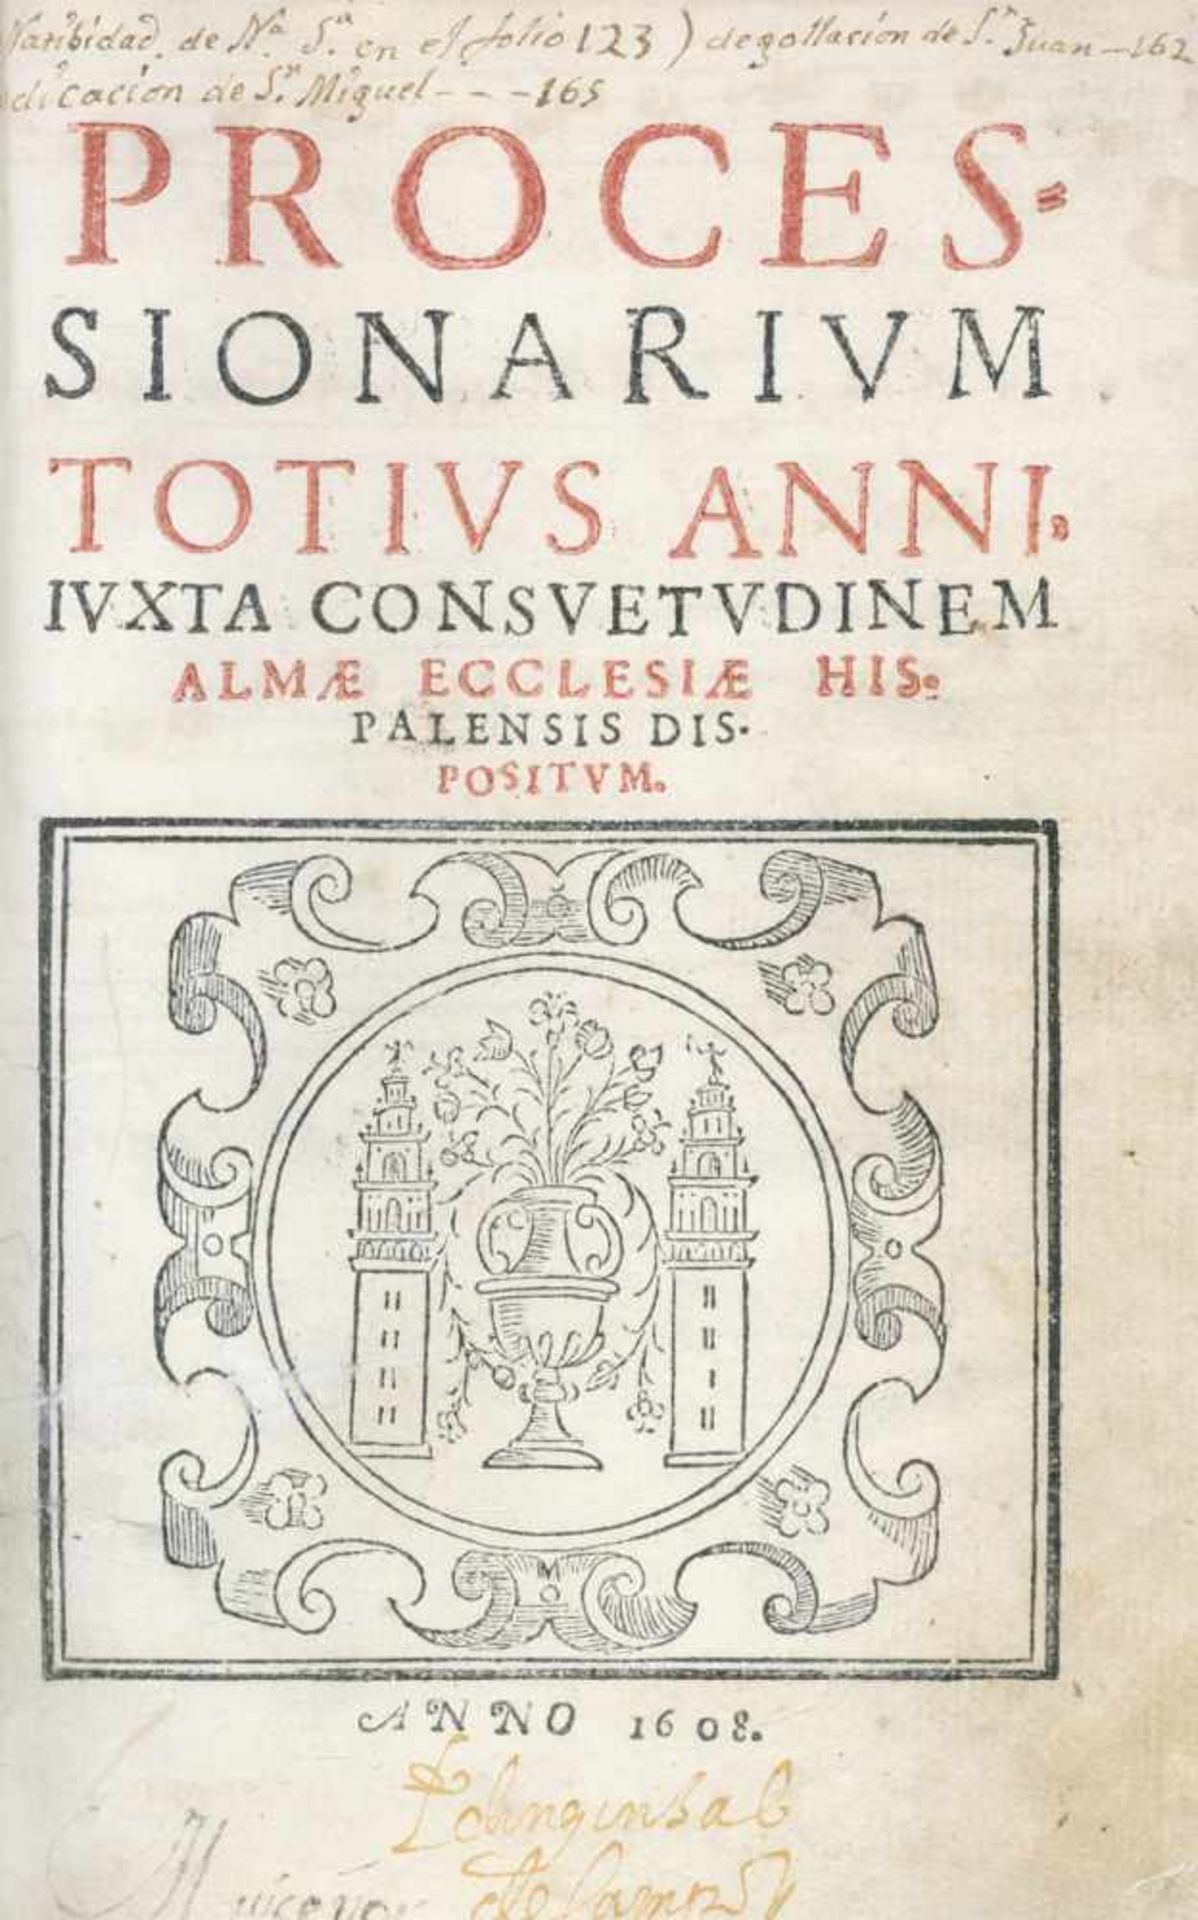 Processionarium totius anni: iuxta consuetudinem almae ecclesiae hispalensis dispositum.